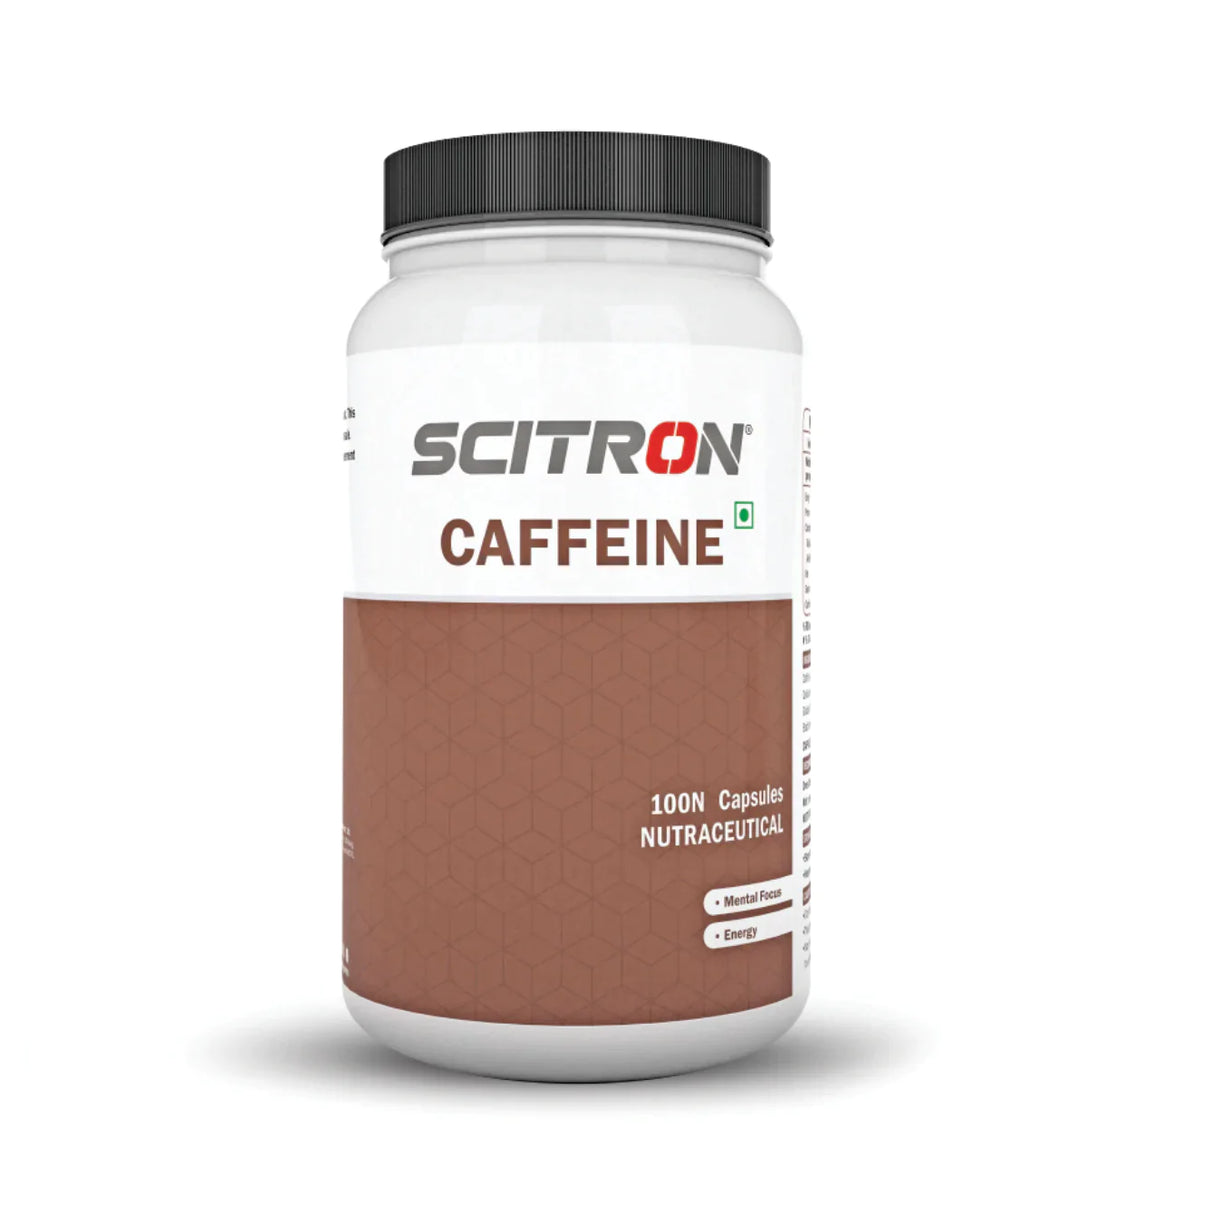 Scitron Caffeine (Jolt, Focus, Energy)